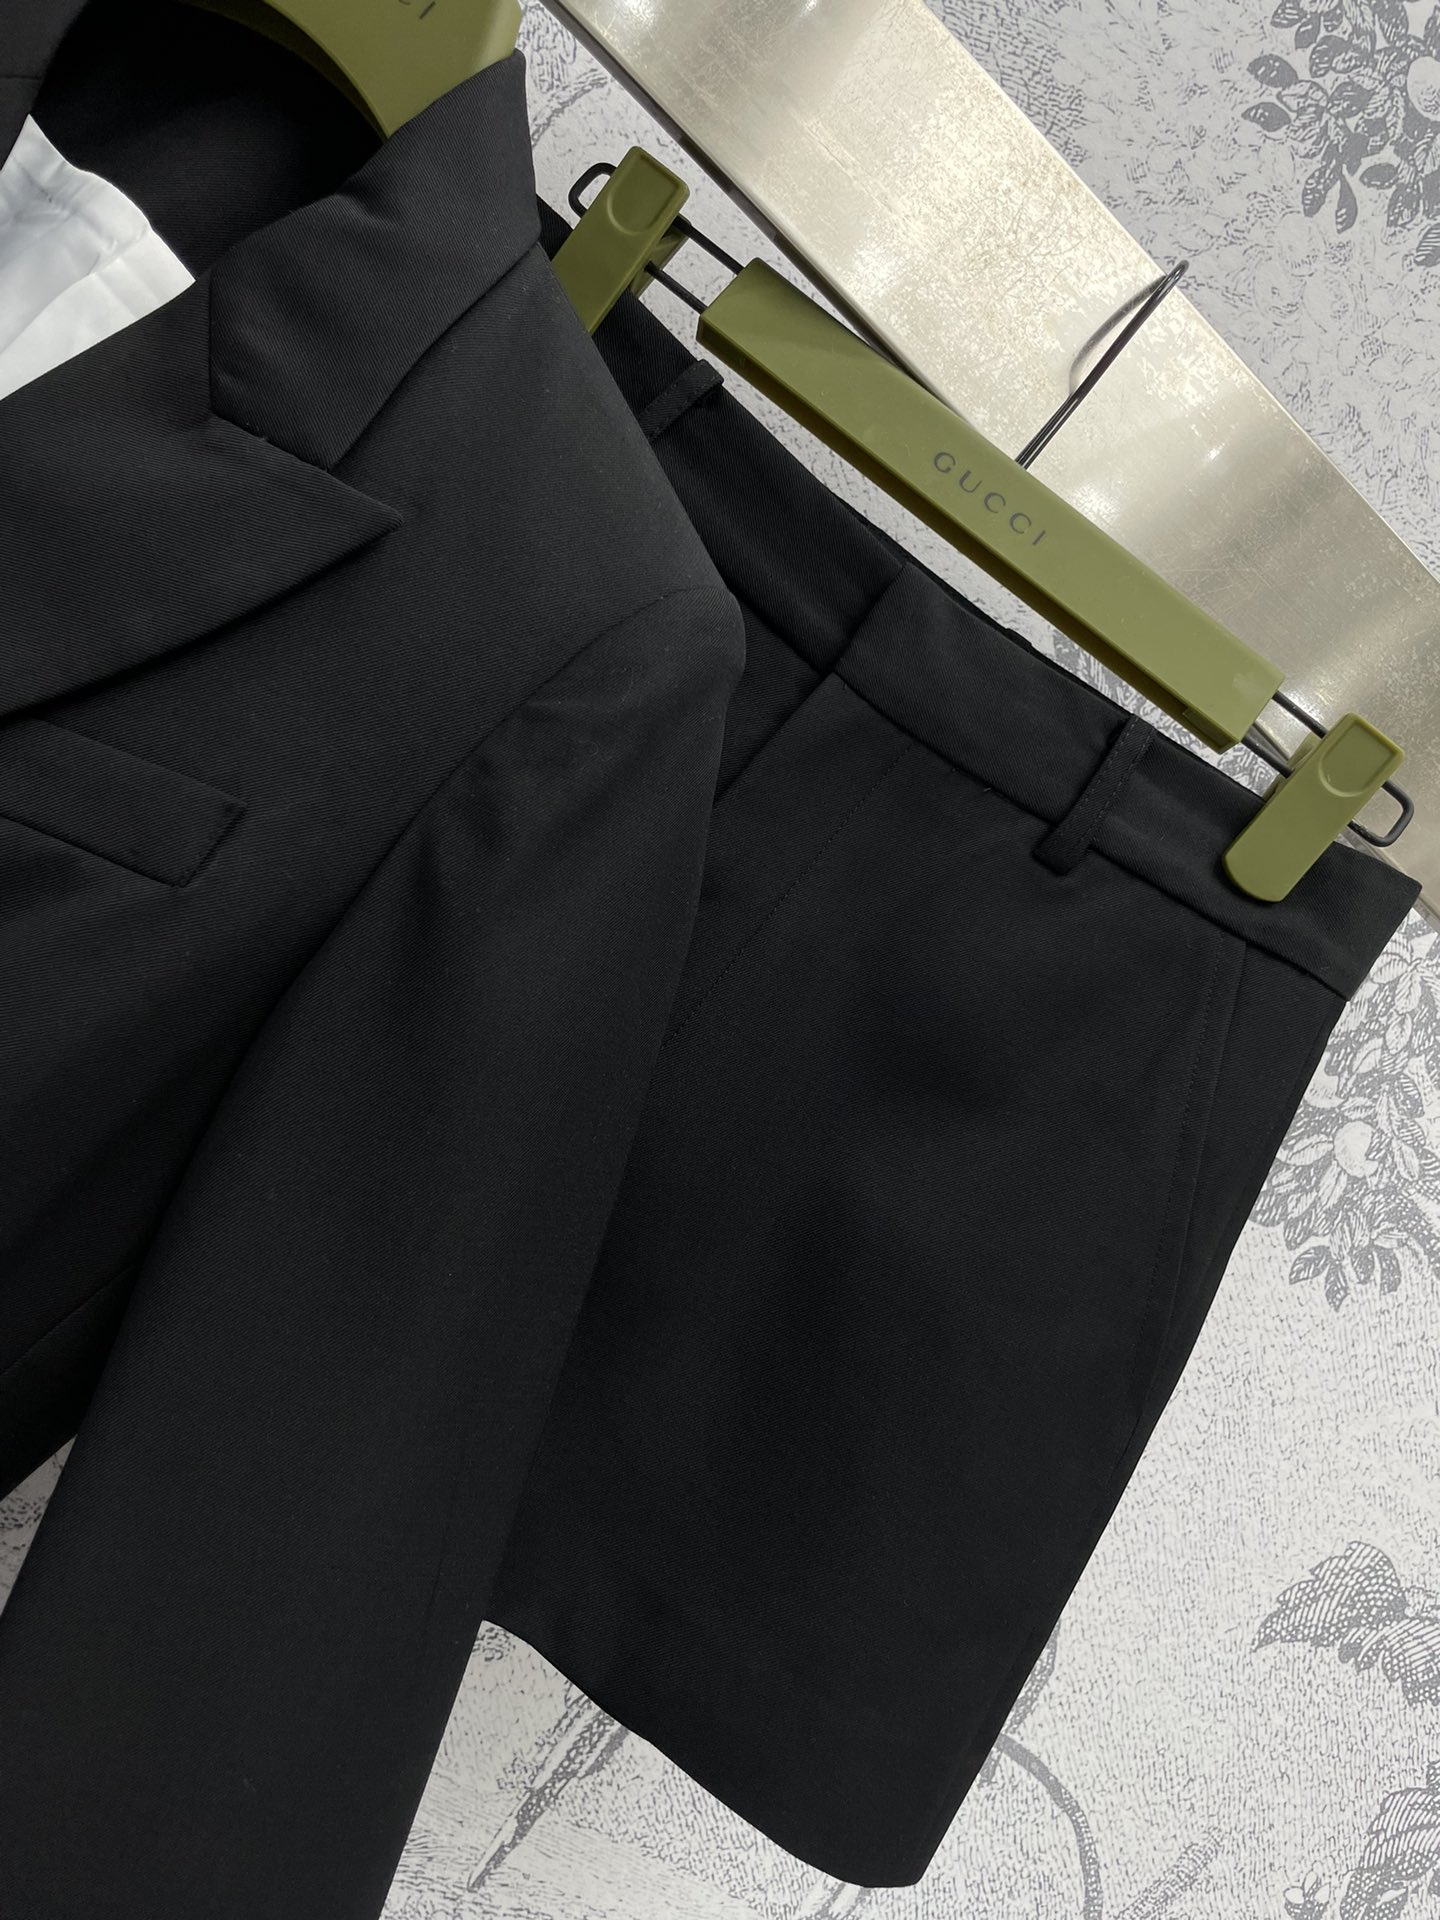 G家24春夏极简主义风格西服套装双排扣西装+高腰短裤的搭配时髦气质代表四粒扣西装版型恰到好处的廓形剪裁百